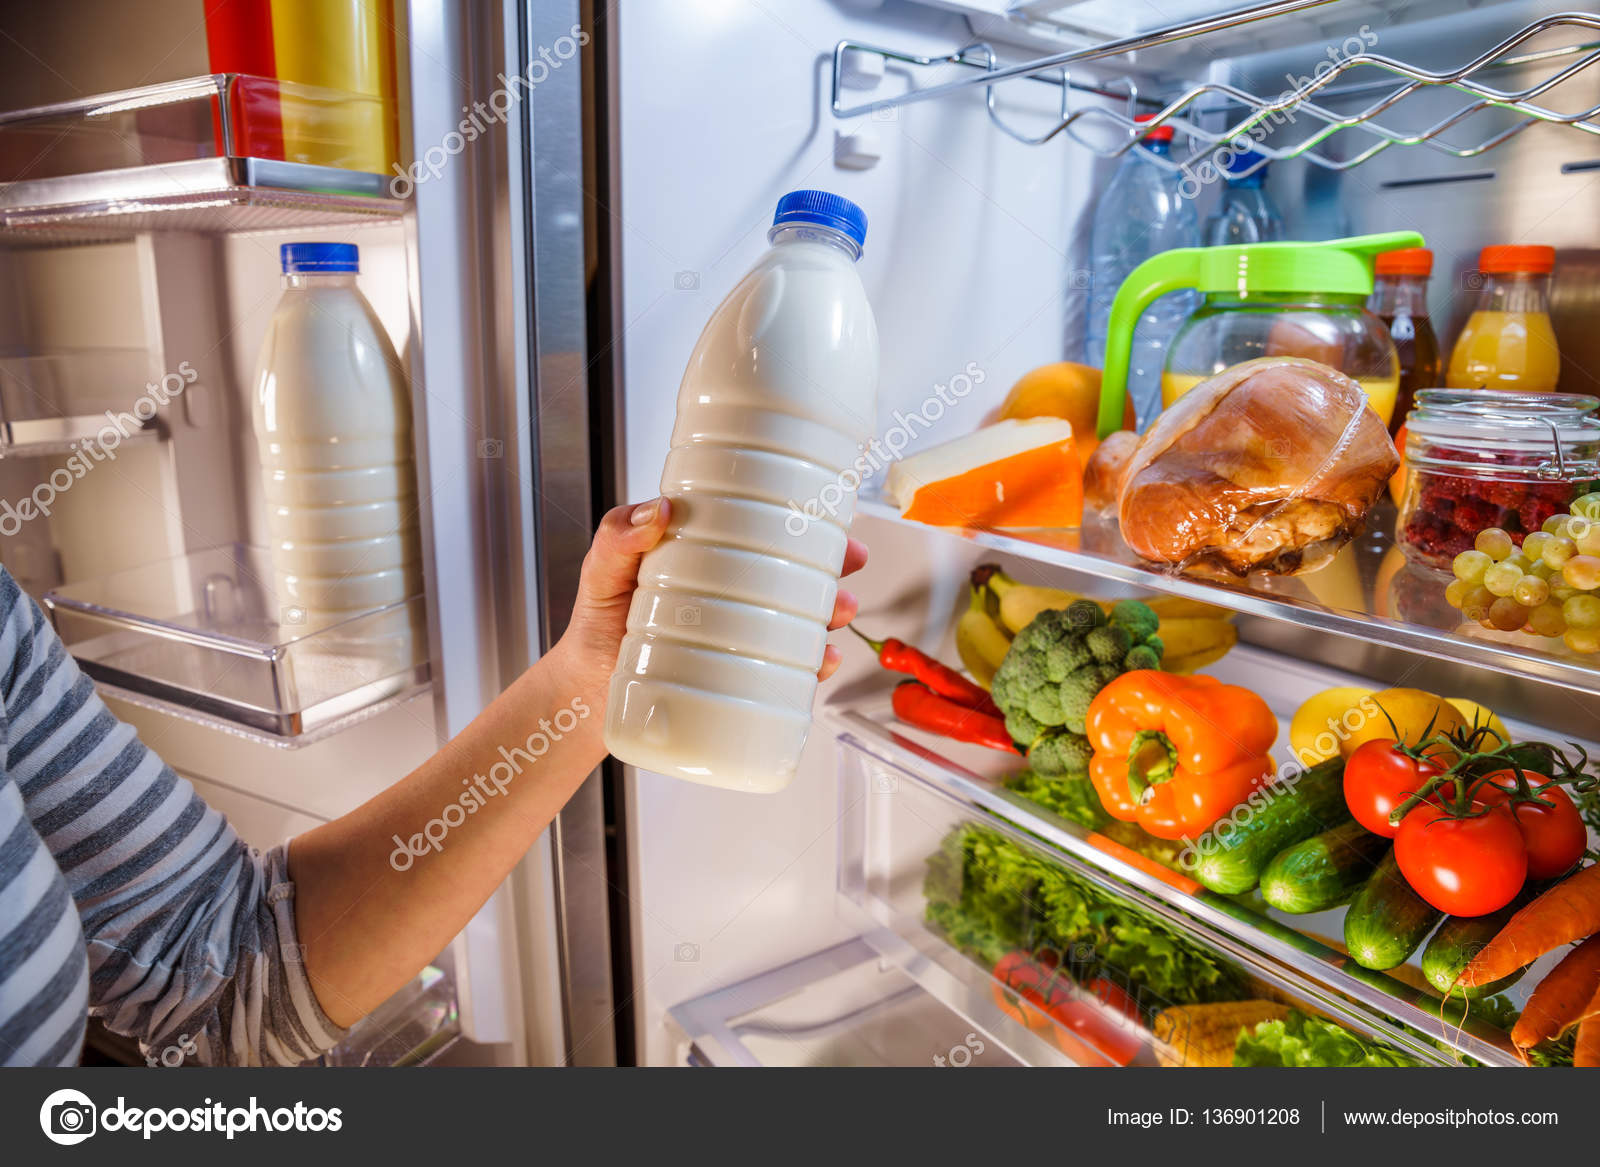 Холодильник после покупки. Холодильник с продуктами. Холодильник с едой. Открытый холодильник. Открытый холодильник с едой.